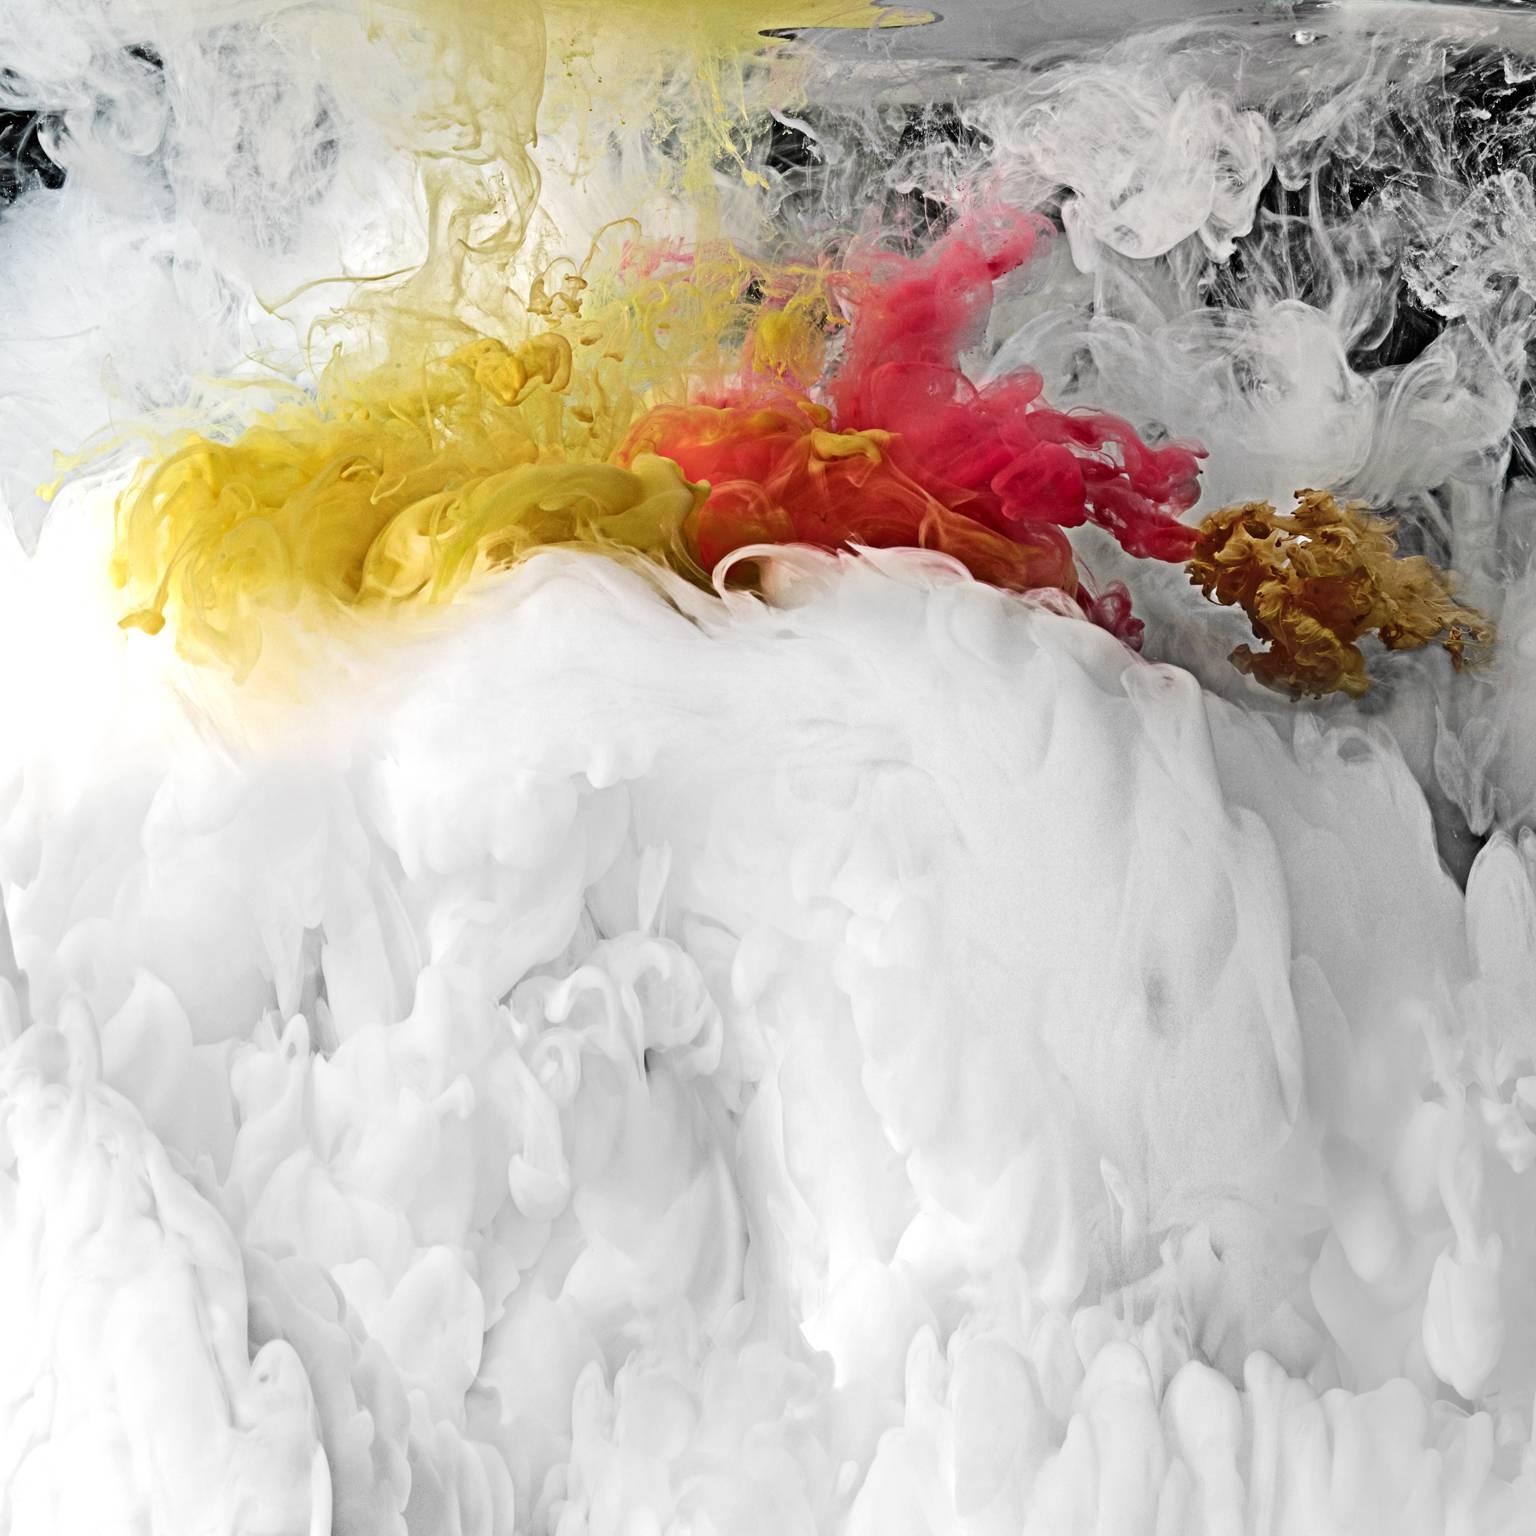 Flux I  - Photographie grand format de paysages abstraits de nuages d'eau liquide